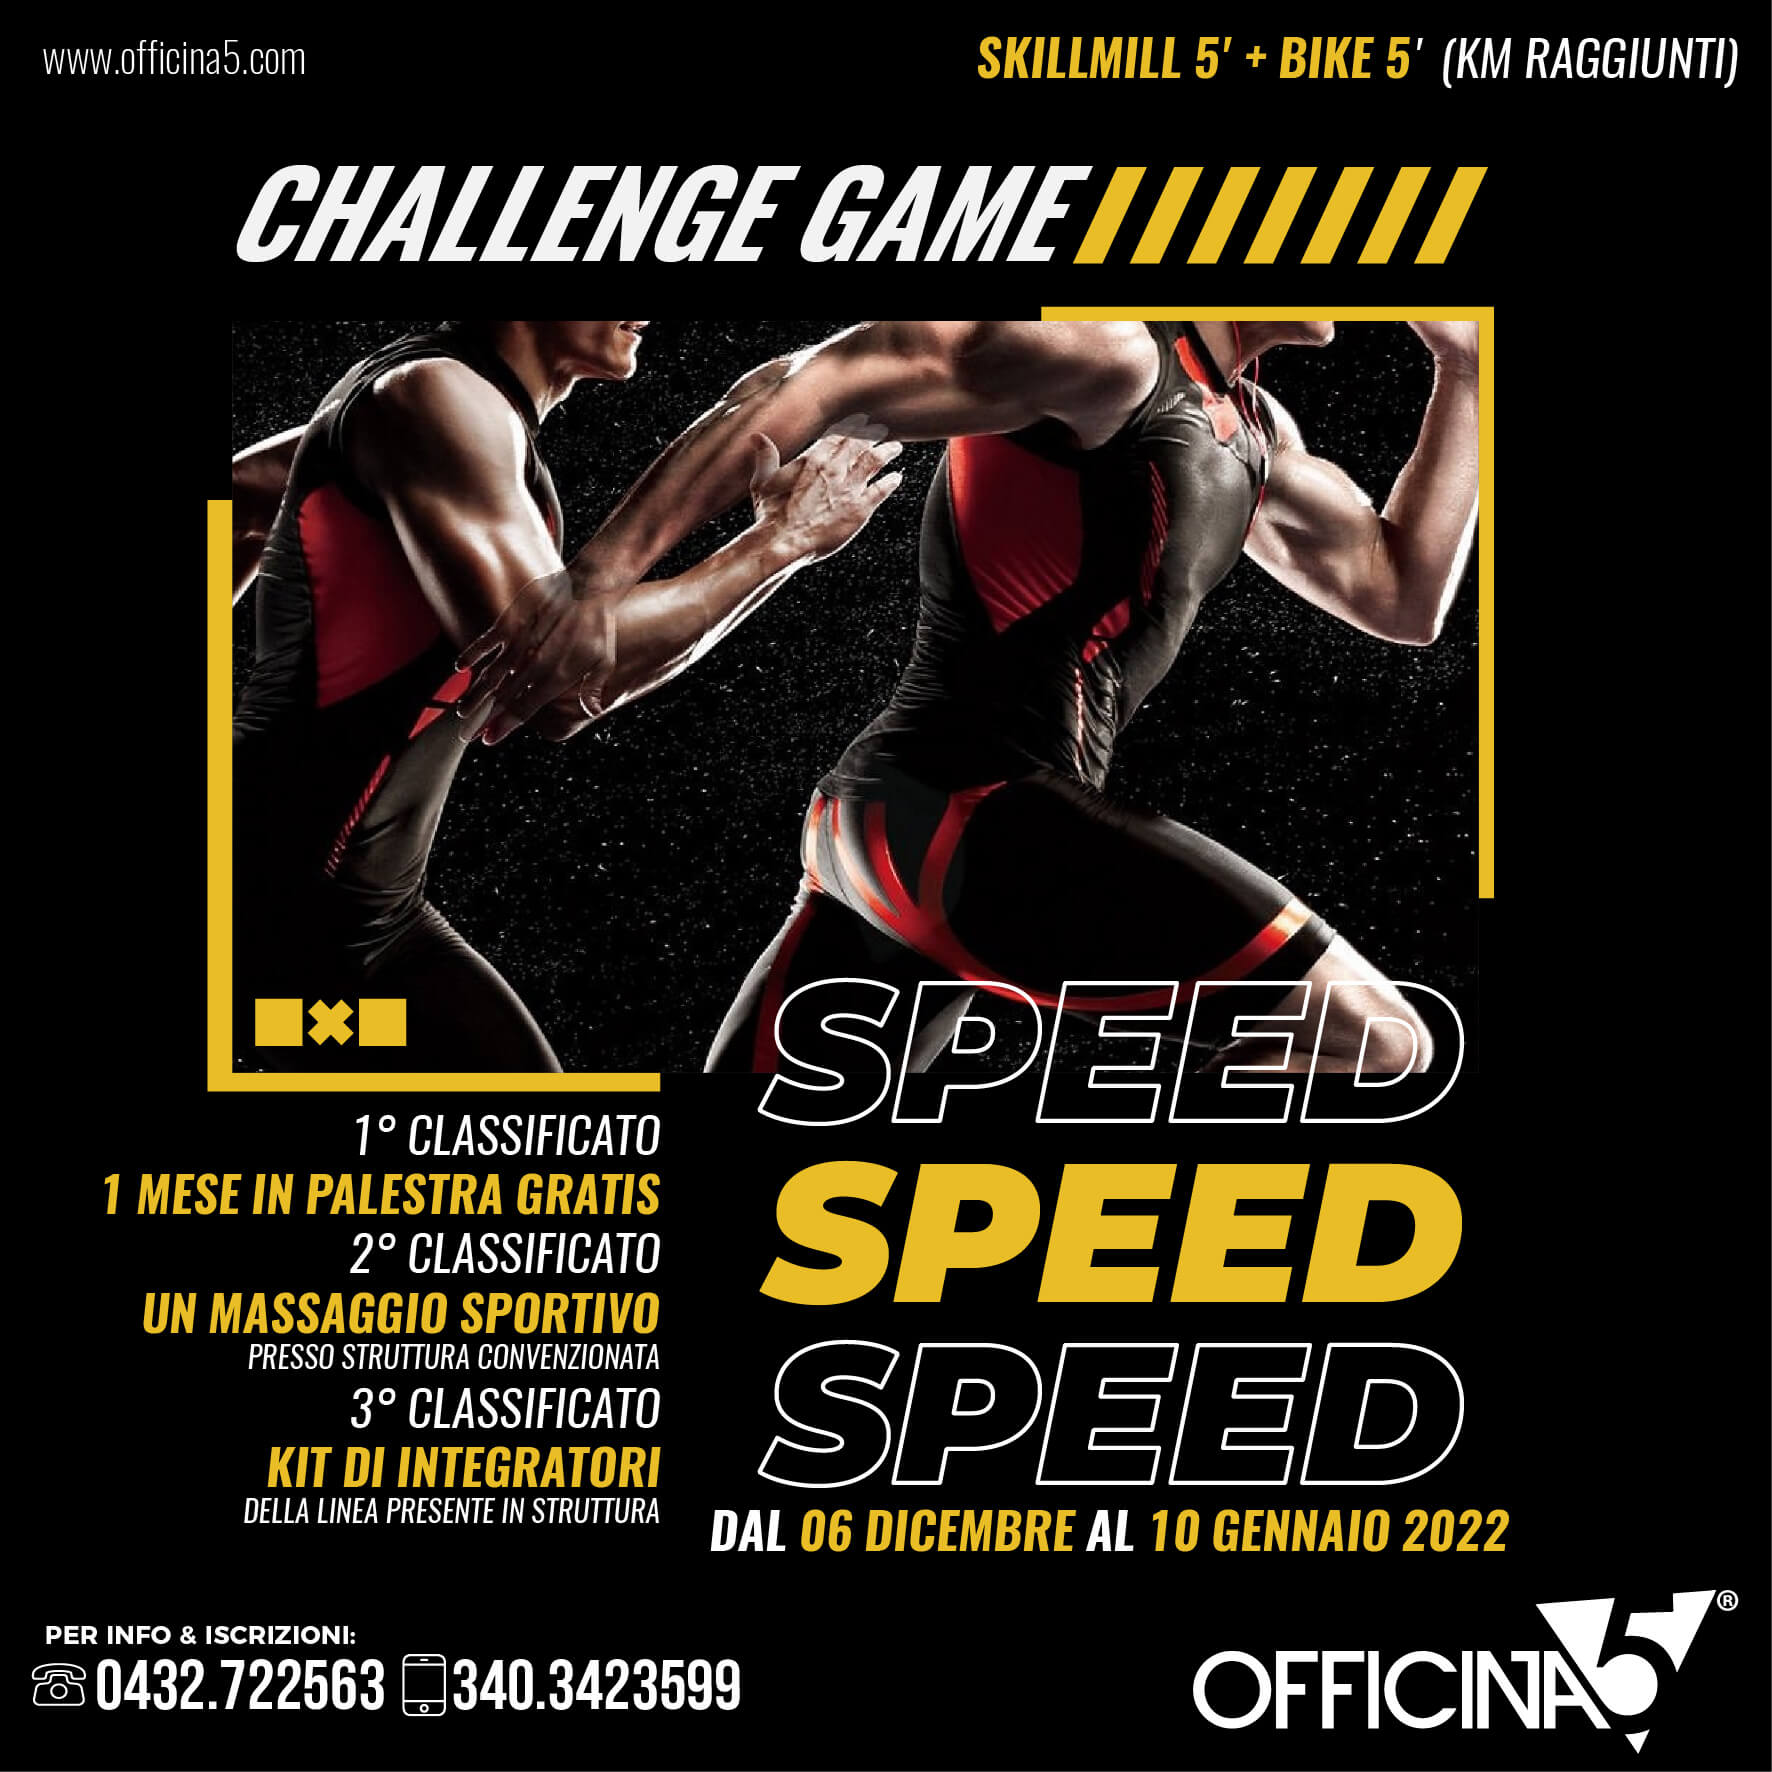 Challenge game di OFFICINA5: la sfida SPEED